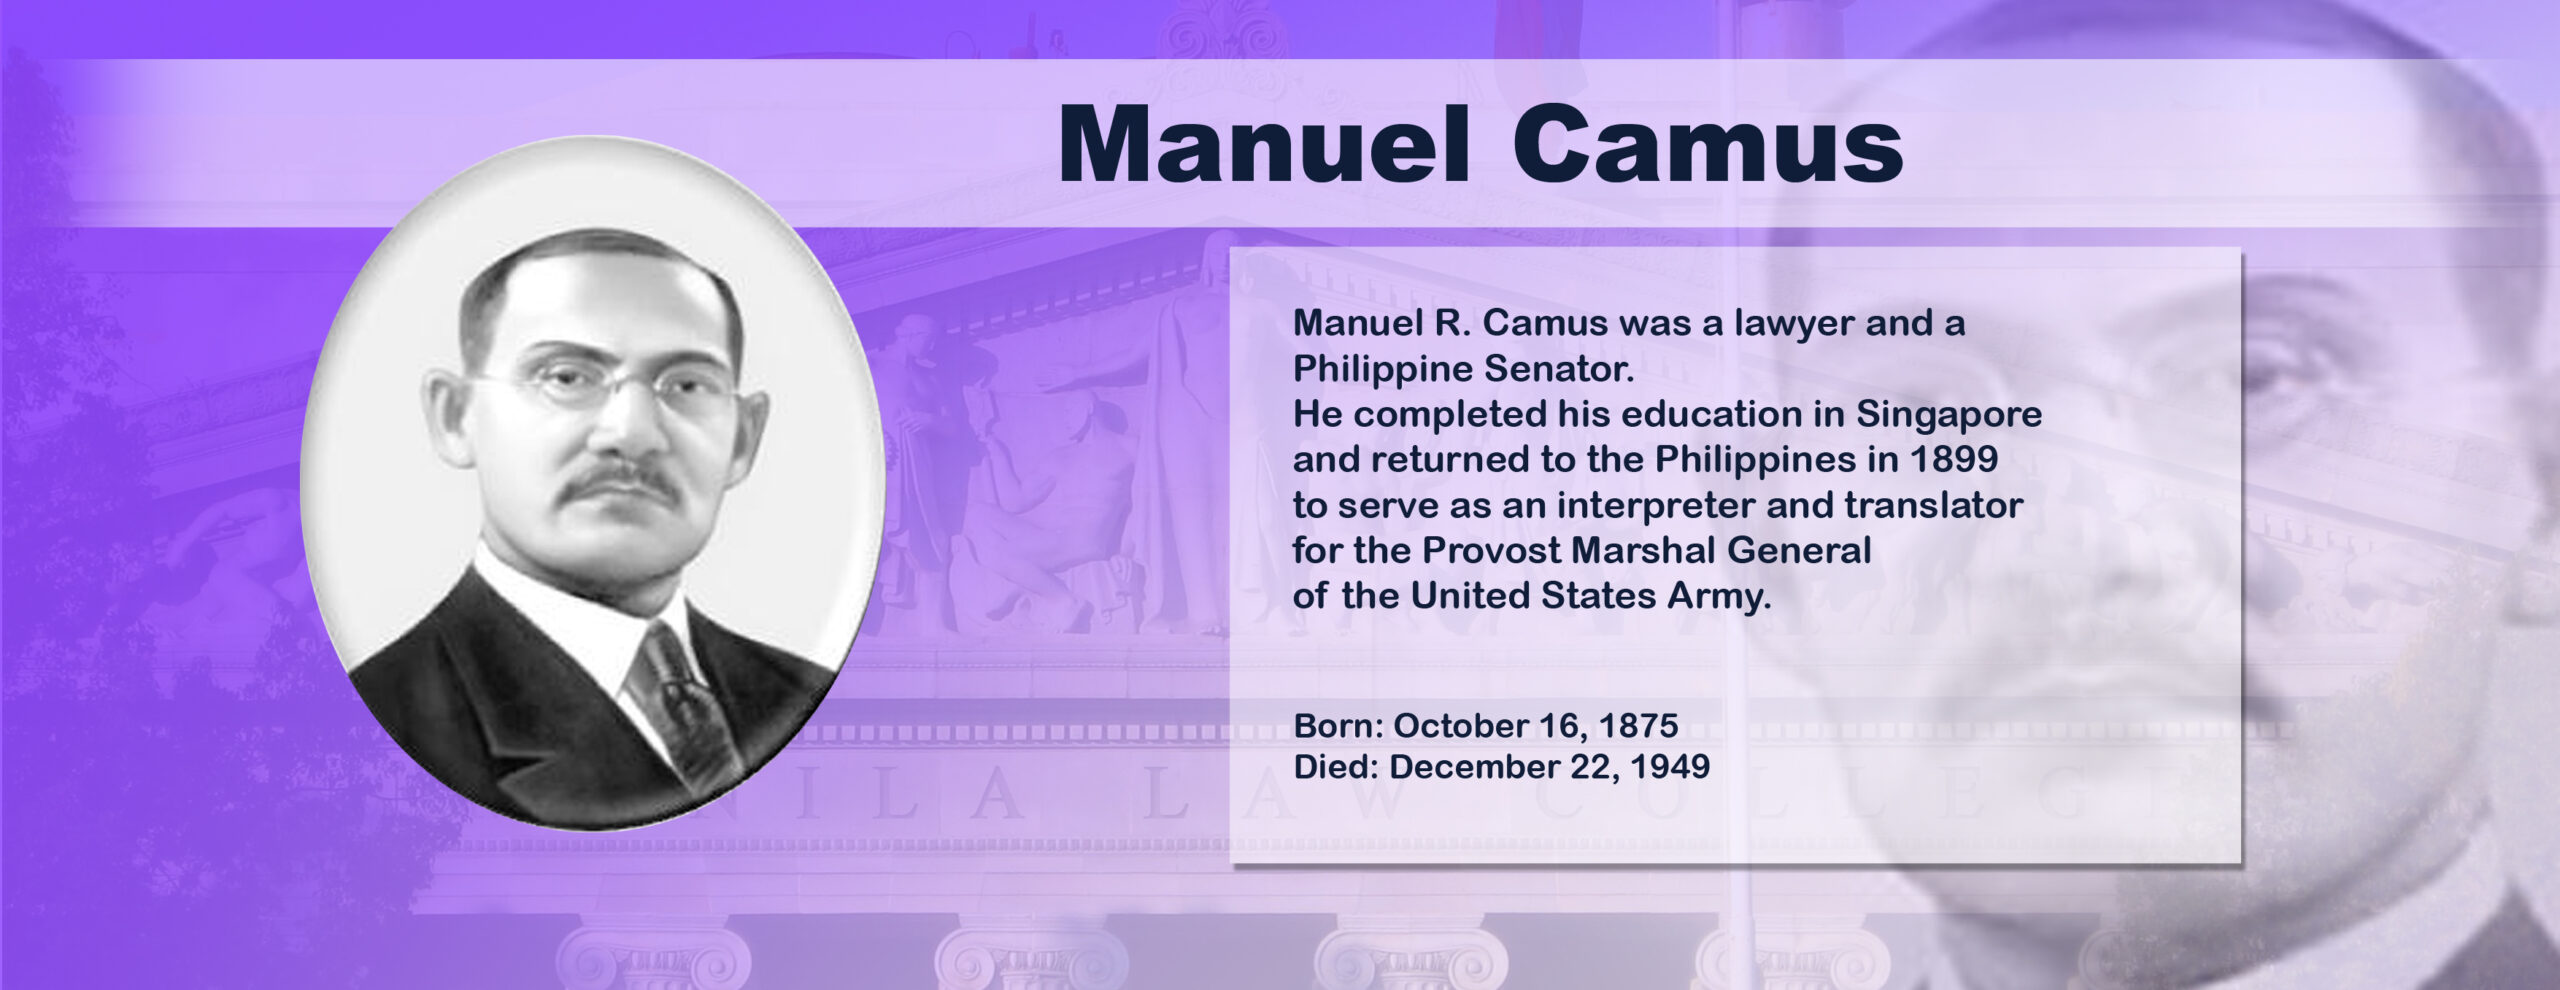 Manuel Camus